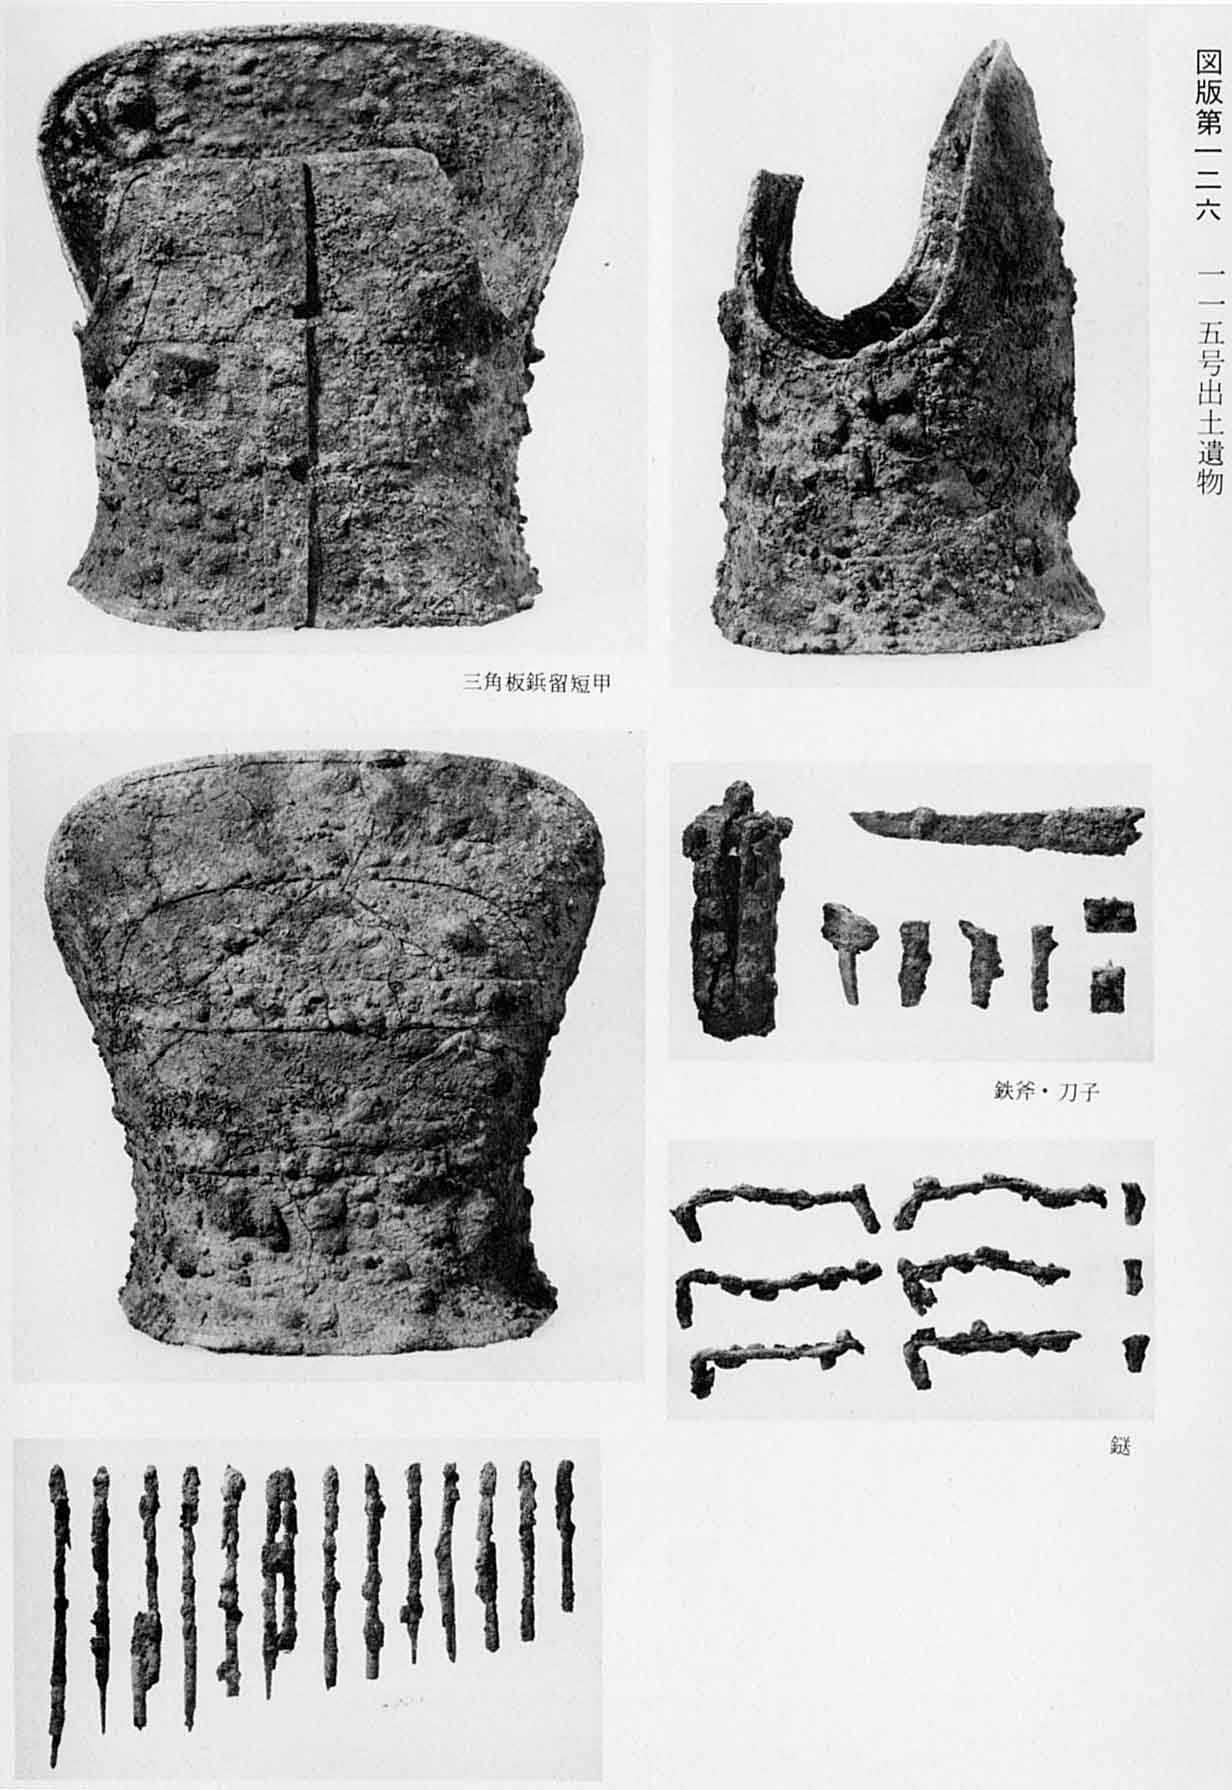 古墳時代の鎧が3種類、鉄製の斧や刀、6つの曲がった鎹、まっすぐの鉄鎹など、6種類の写真が撮影されている、図版126 115号出土遺物のモノクロ写真